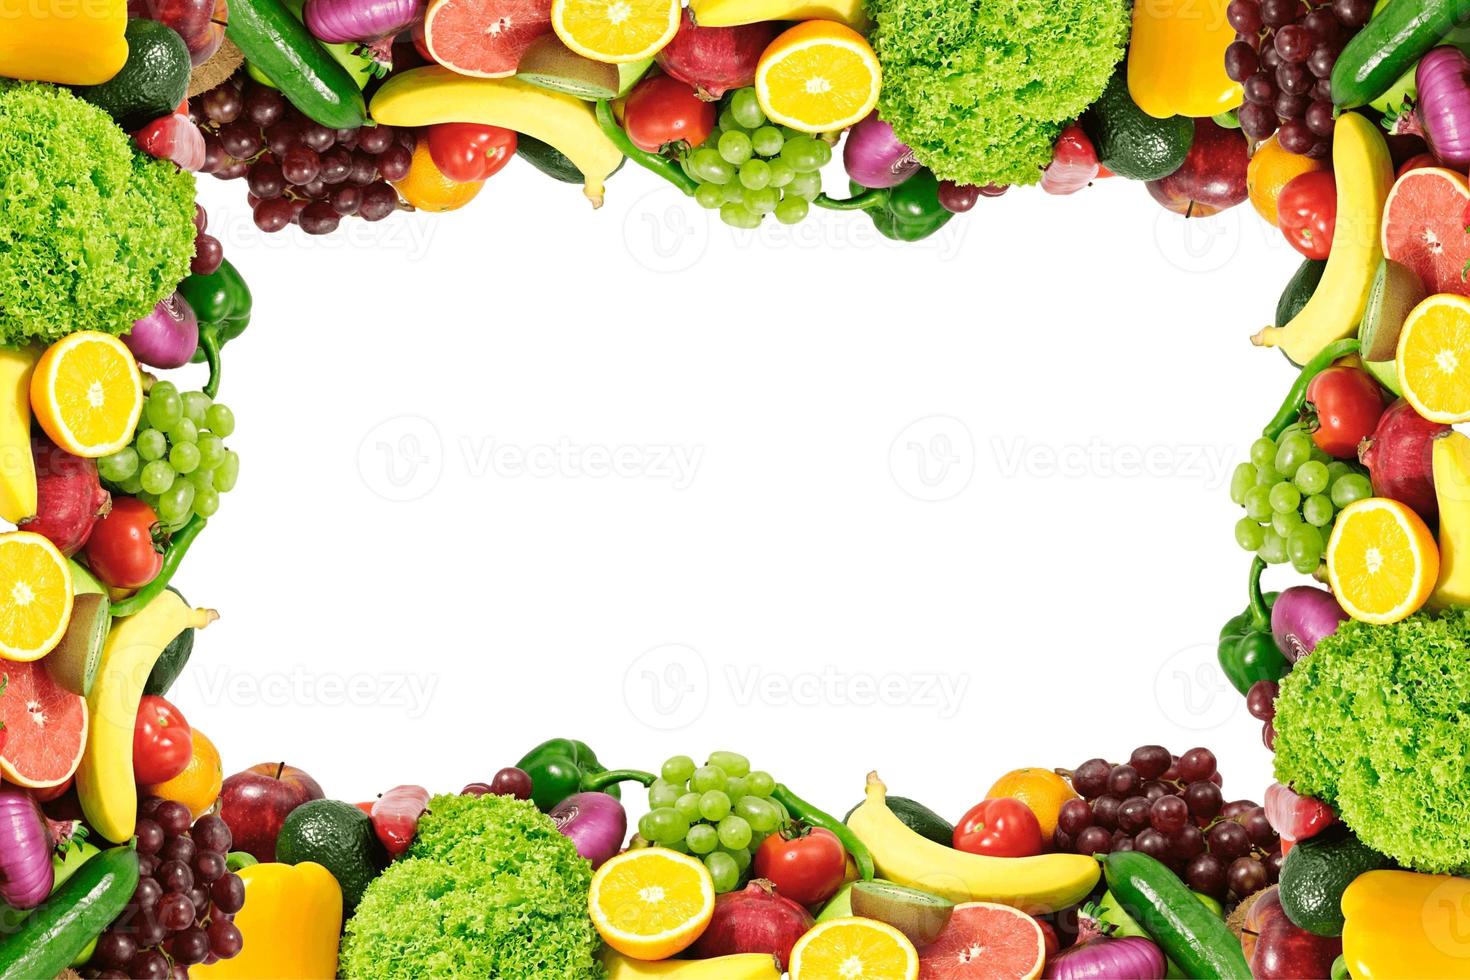 fond de nourriture, fond de fruits et légumes avec espace de copie pour le texte, ingrédients alimentaires frais pour la cuisine, vue de dessus avec espace de copie, bannière publicitaire alimentaire photo